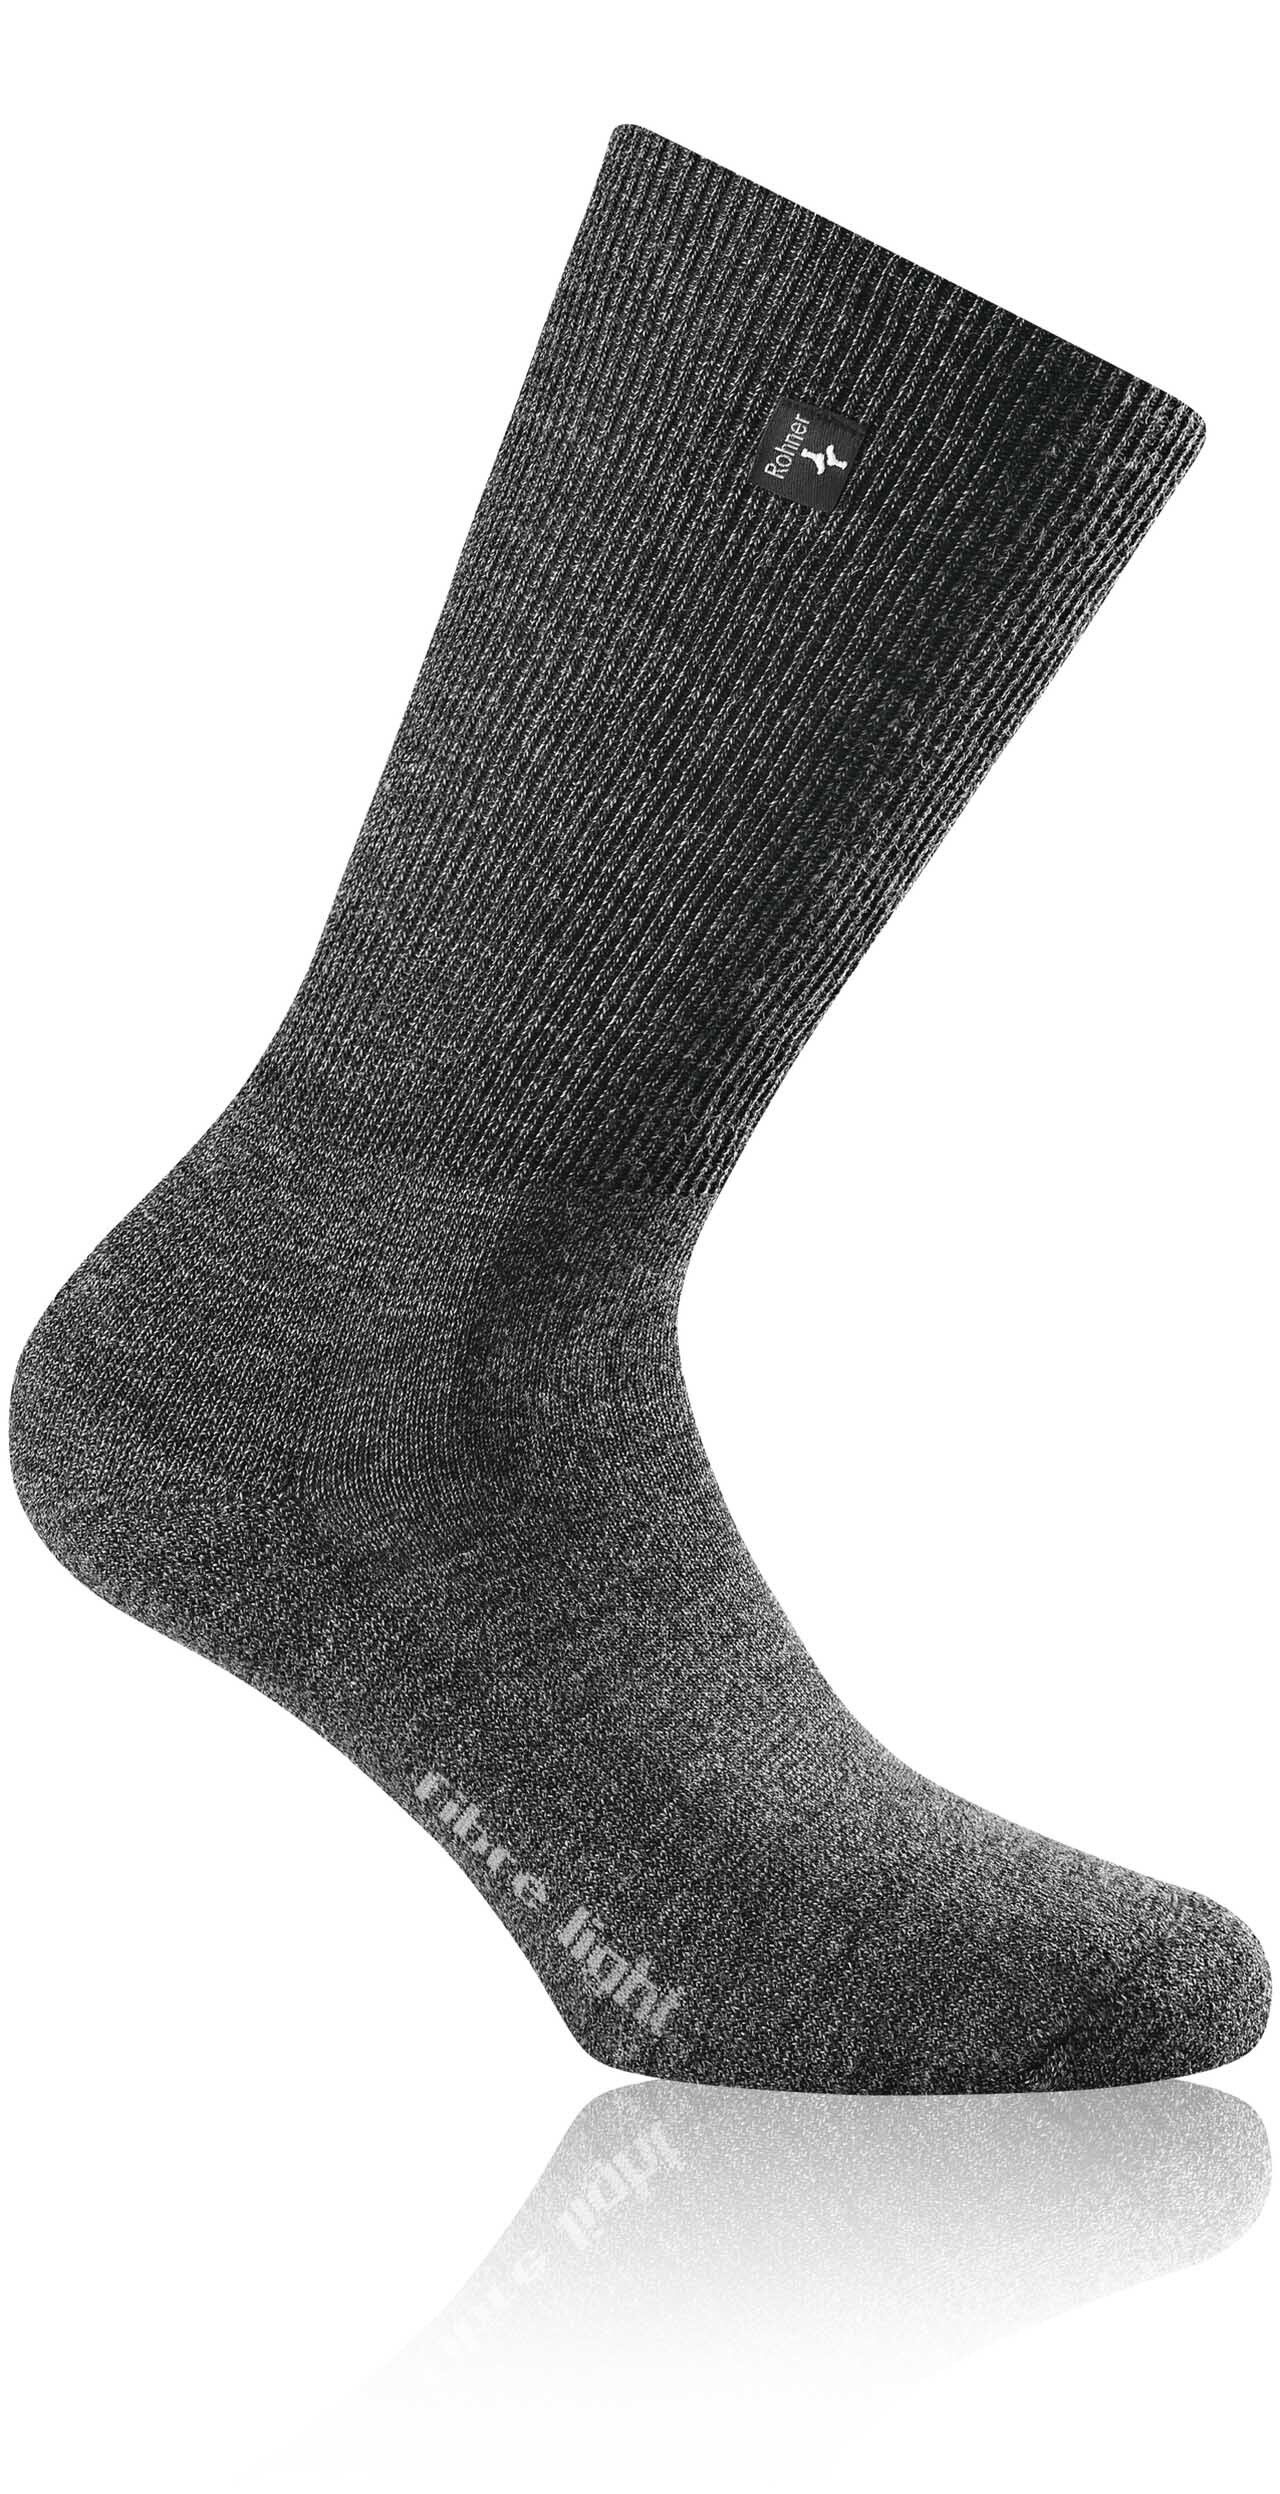 Rohner Socks Sportsocken Unisex Trekking fibre light - supeR Socken Anthrazit